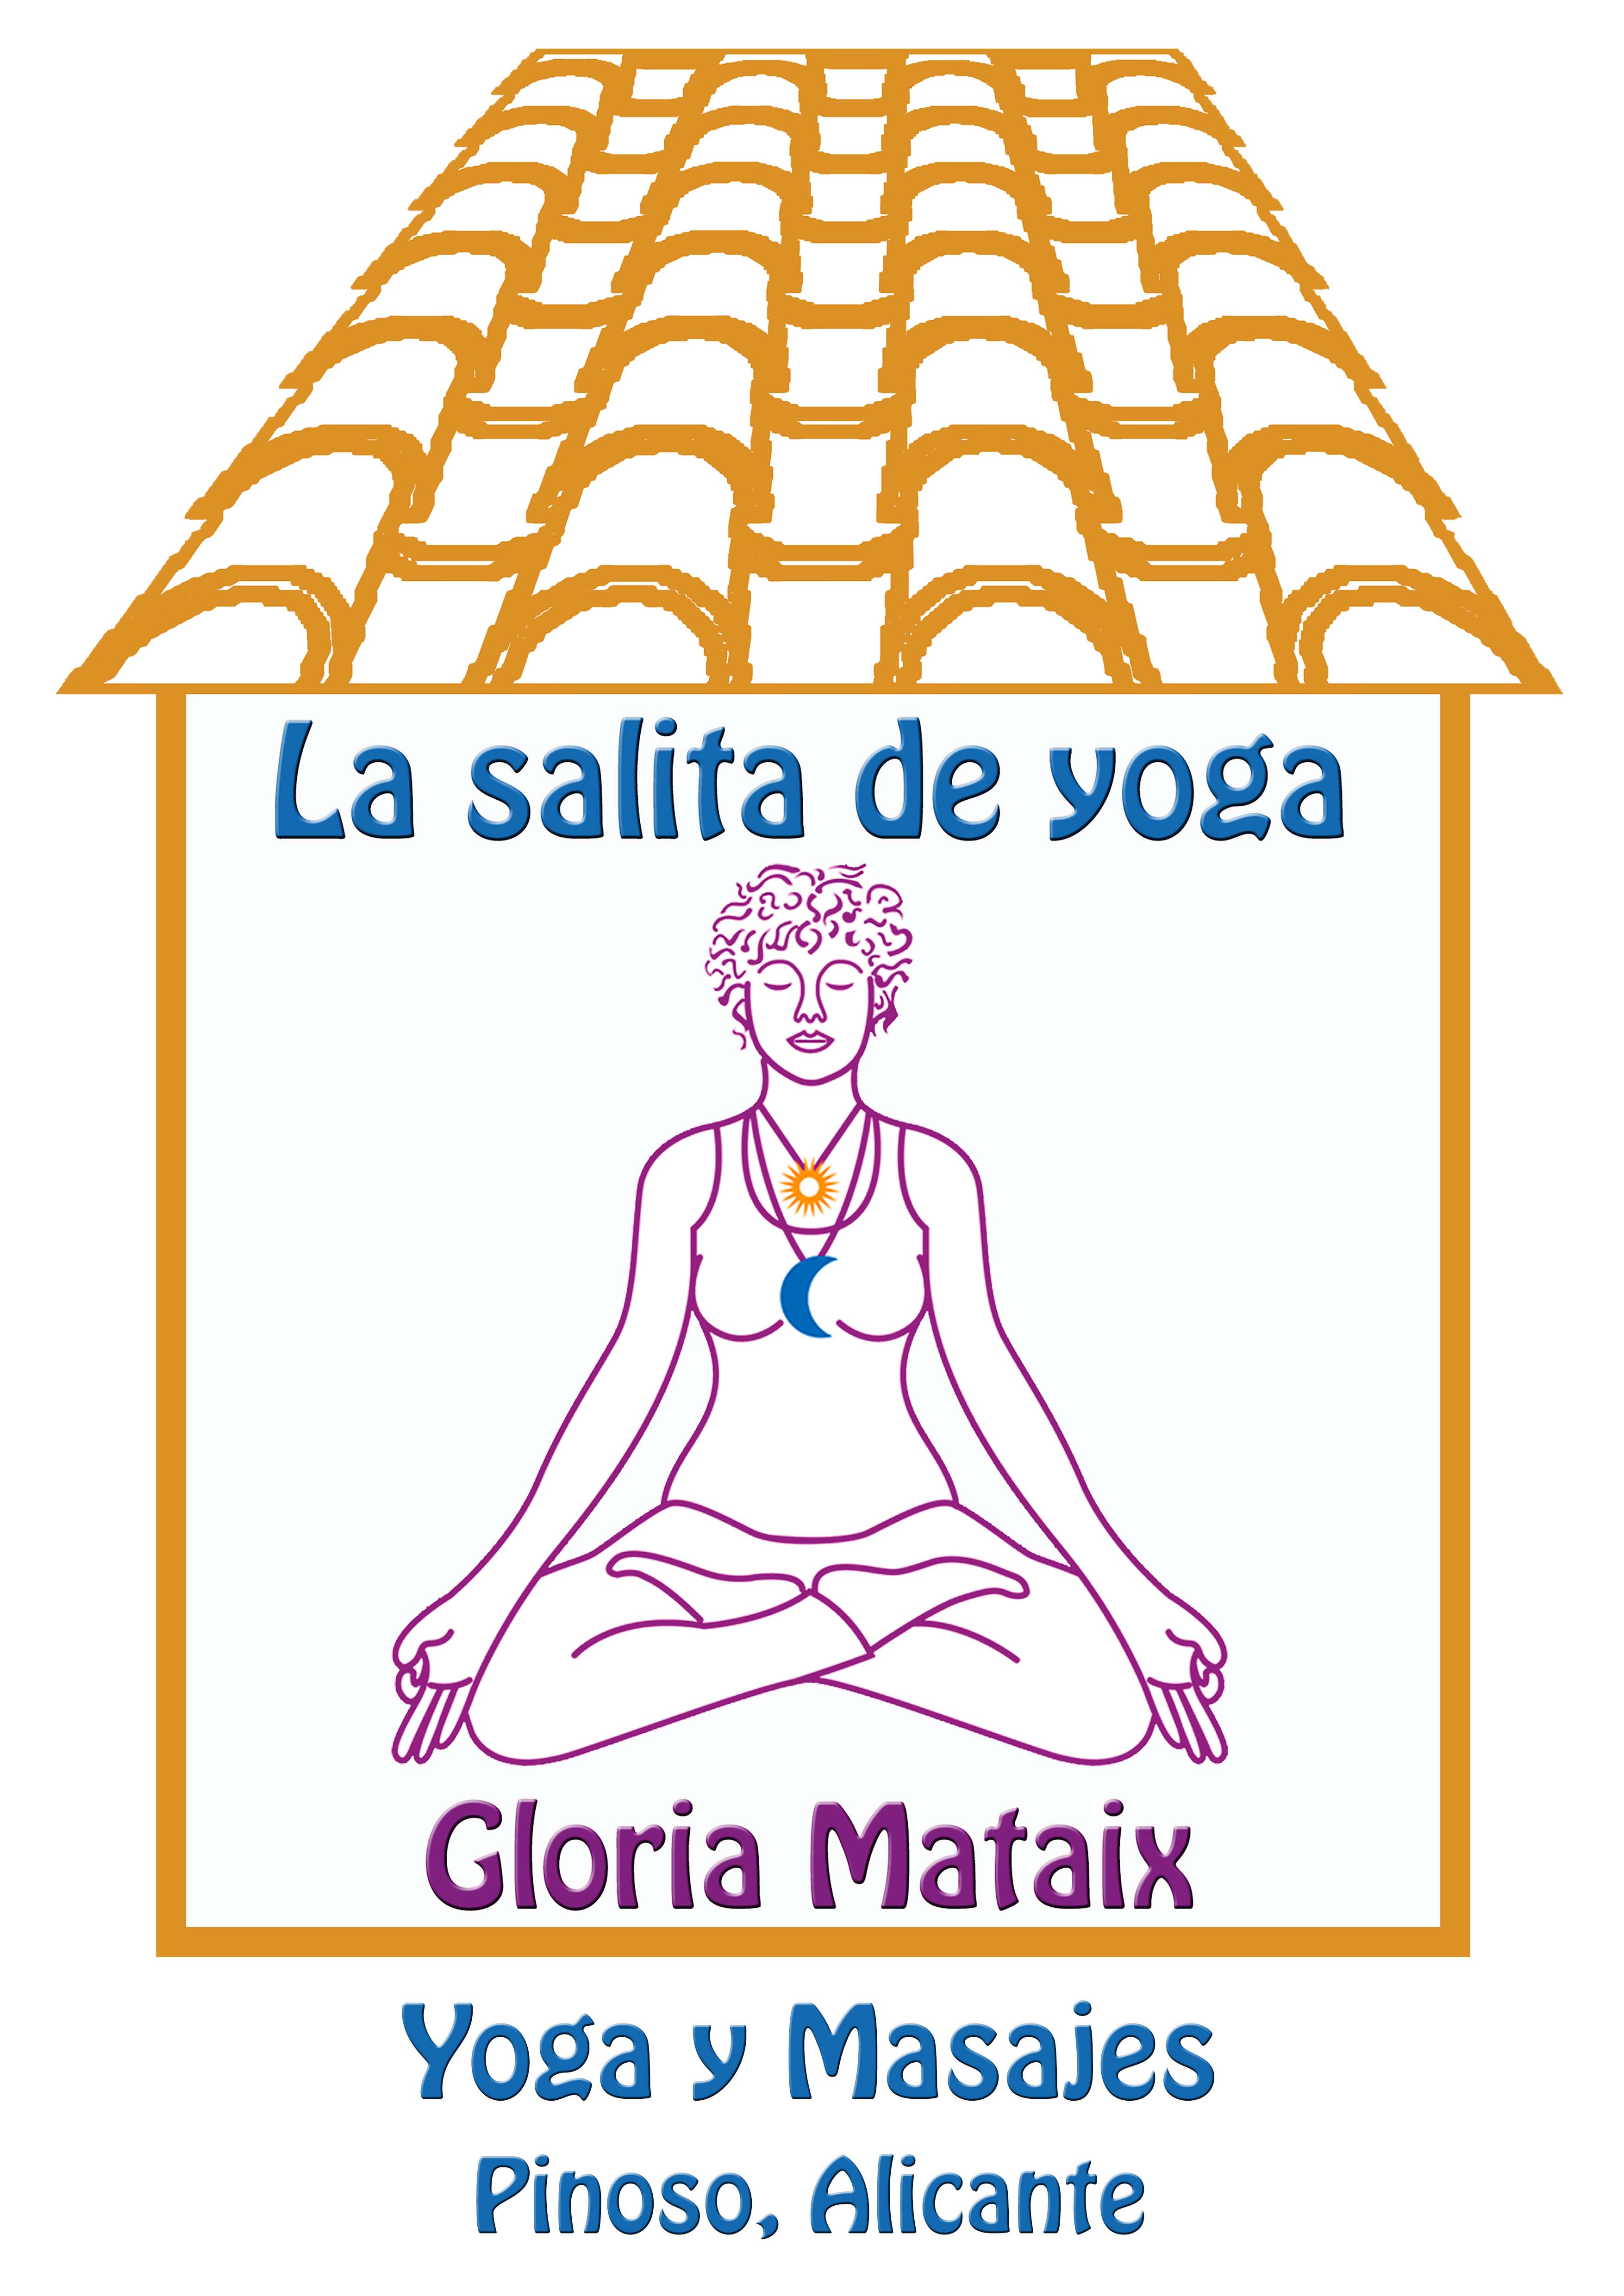 Logotipo de la clínica ***LA SALITA DE YOGA - GLORIA MATAIX